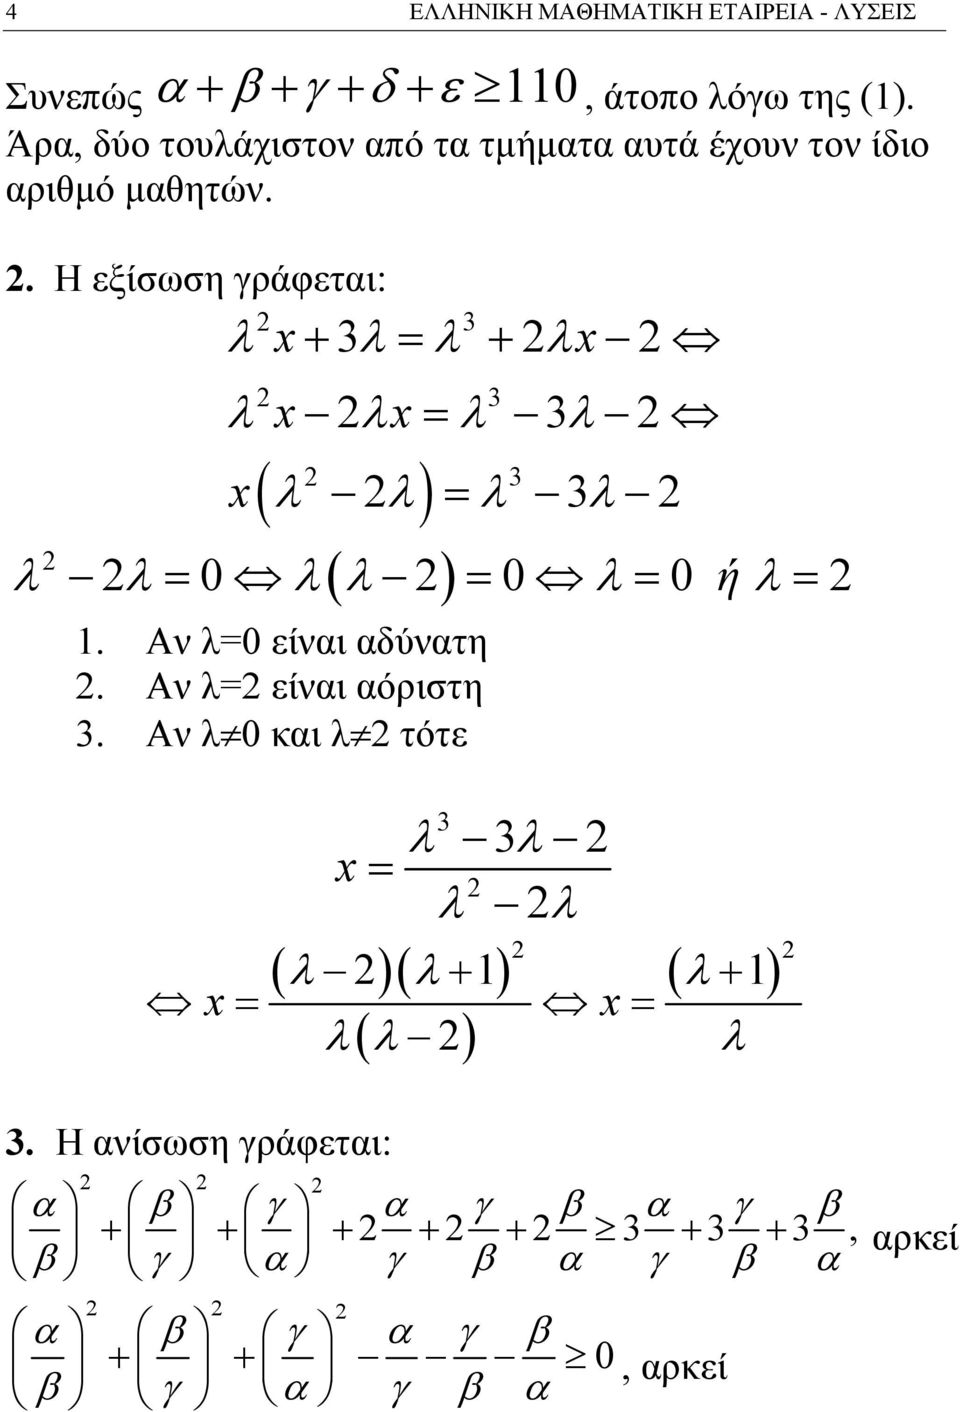 . Η εξίσωση γράφεται: λ x λ λ λx λ λ λ λ x + = + x x= ( ) λ λ λ λ = ( ) λ λ λ λ λ ή λ = 0 = 0 = 0 =.